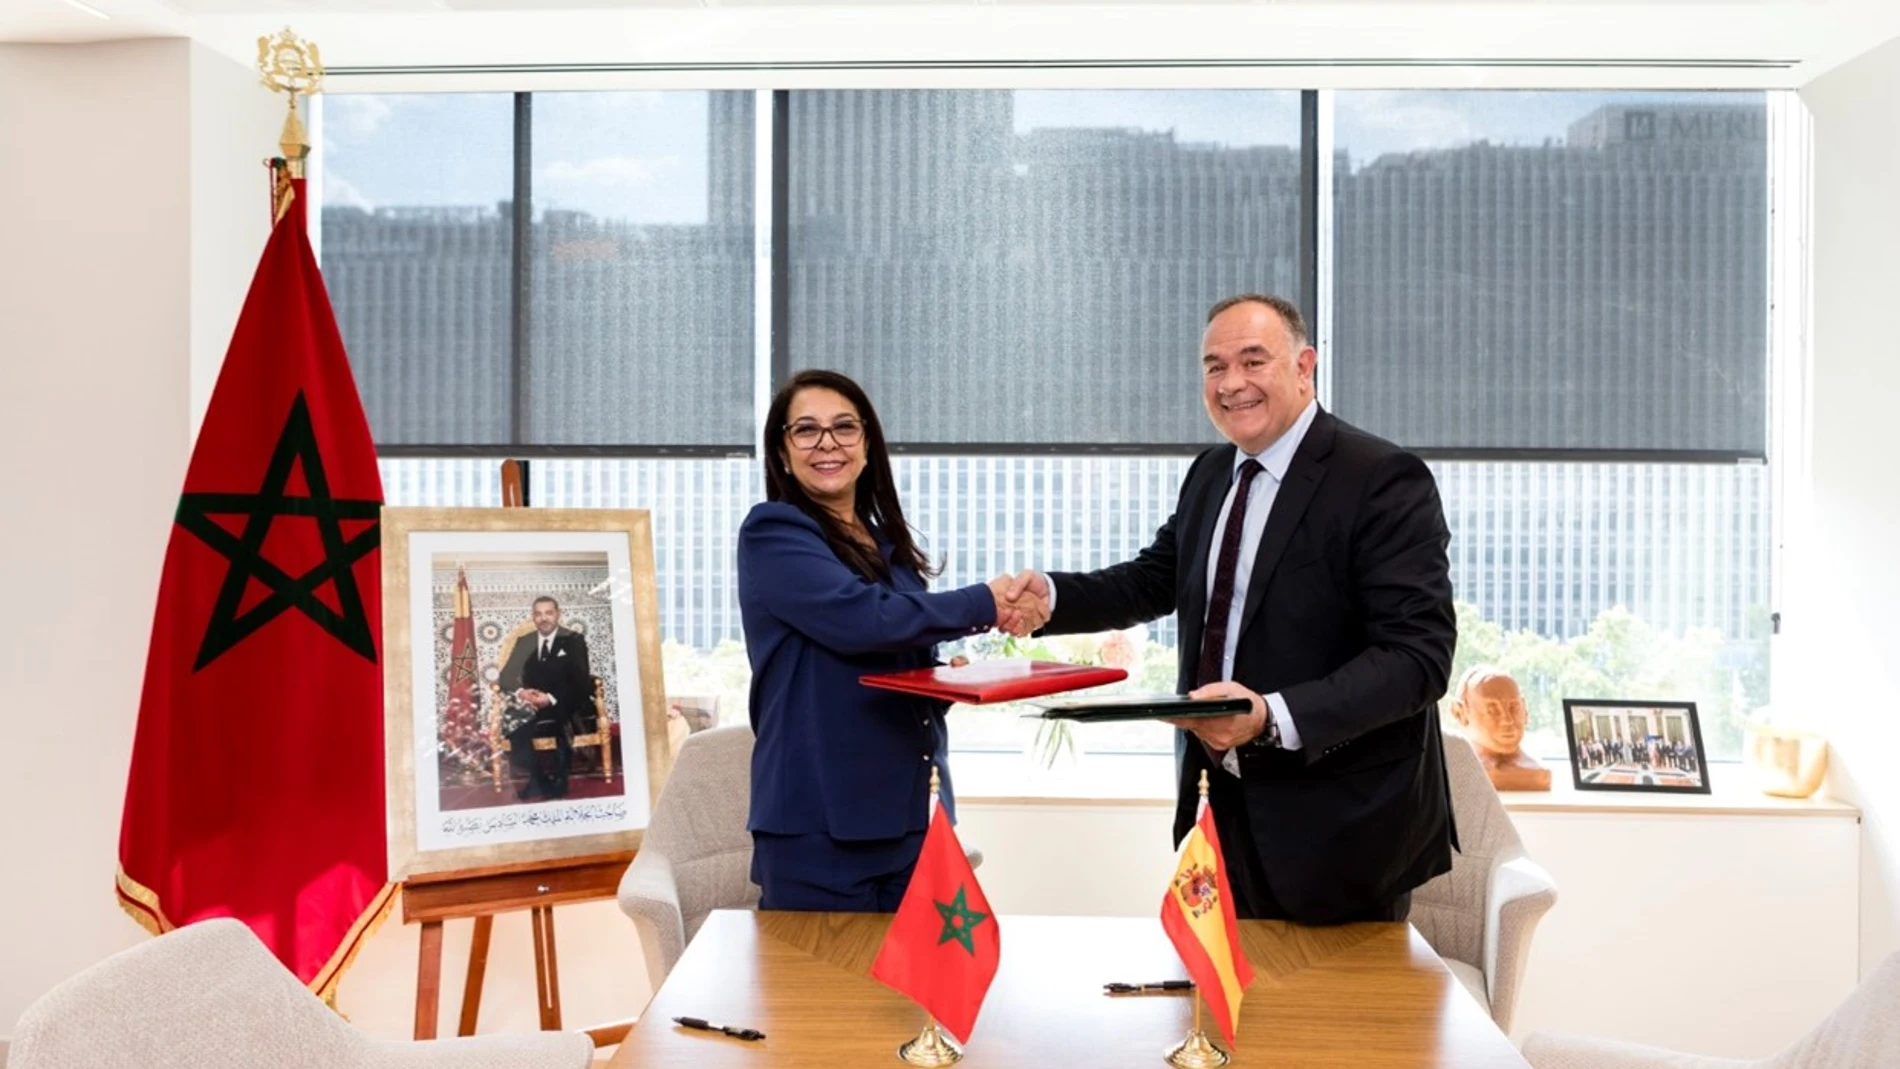 La embajadora de Marruecos en España, Karima Benyaich junto a Carlos Giménez, CEO de Planeta Formación y Universidades